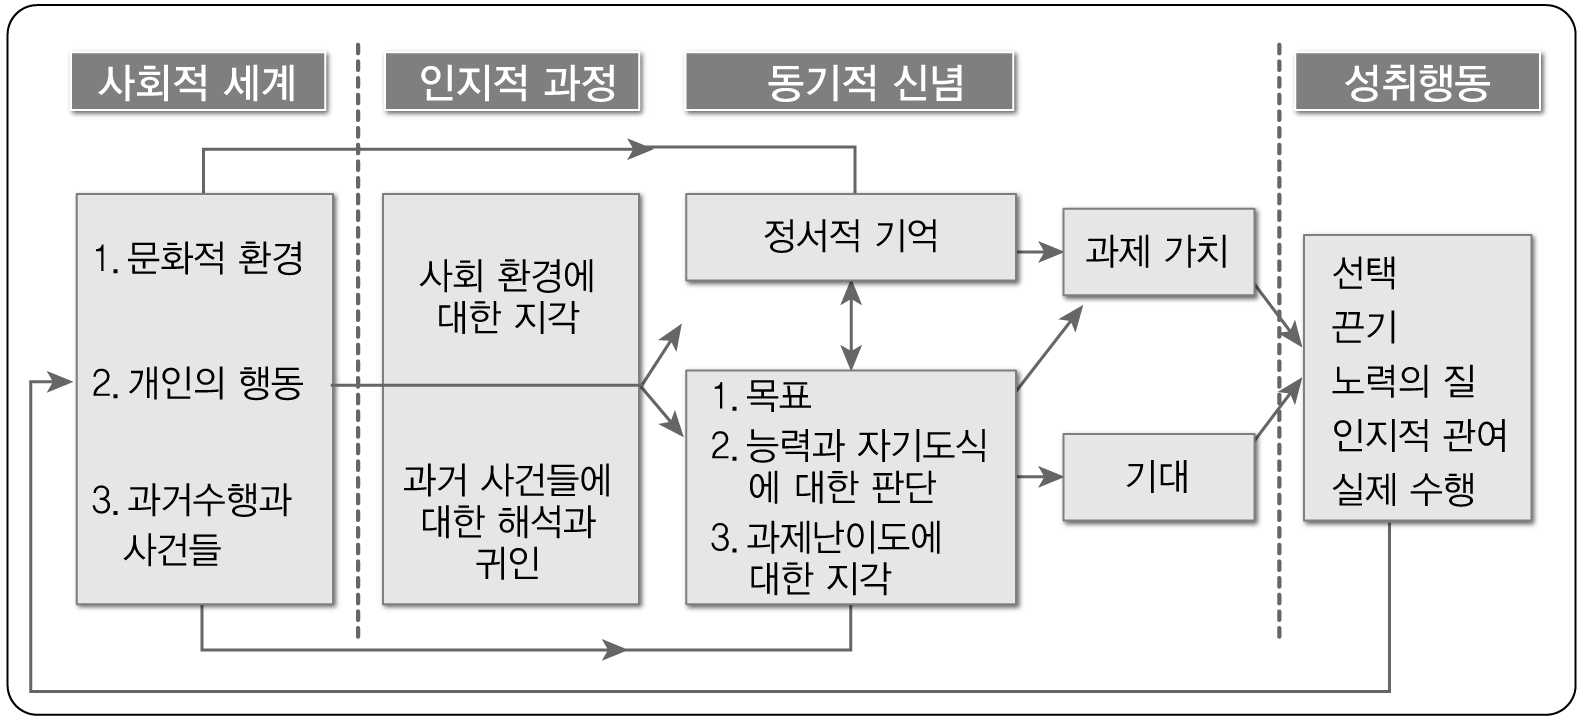 성취동기에 대한 사회인지적 기대-가치 모형(김아영, 2010, p. 85)